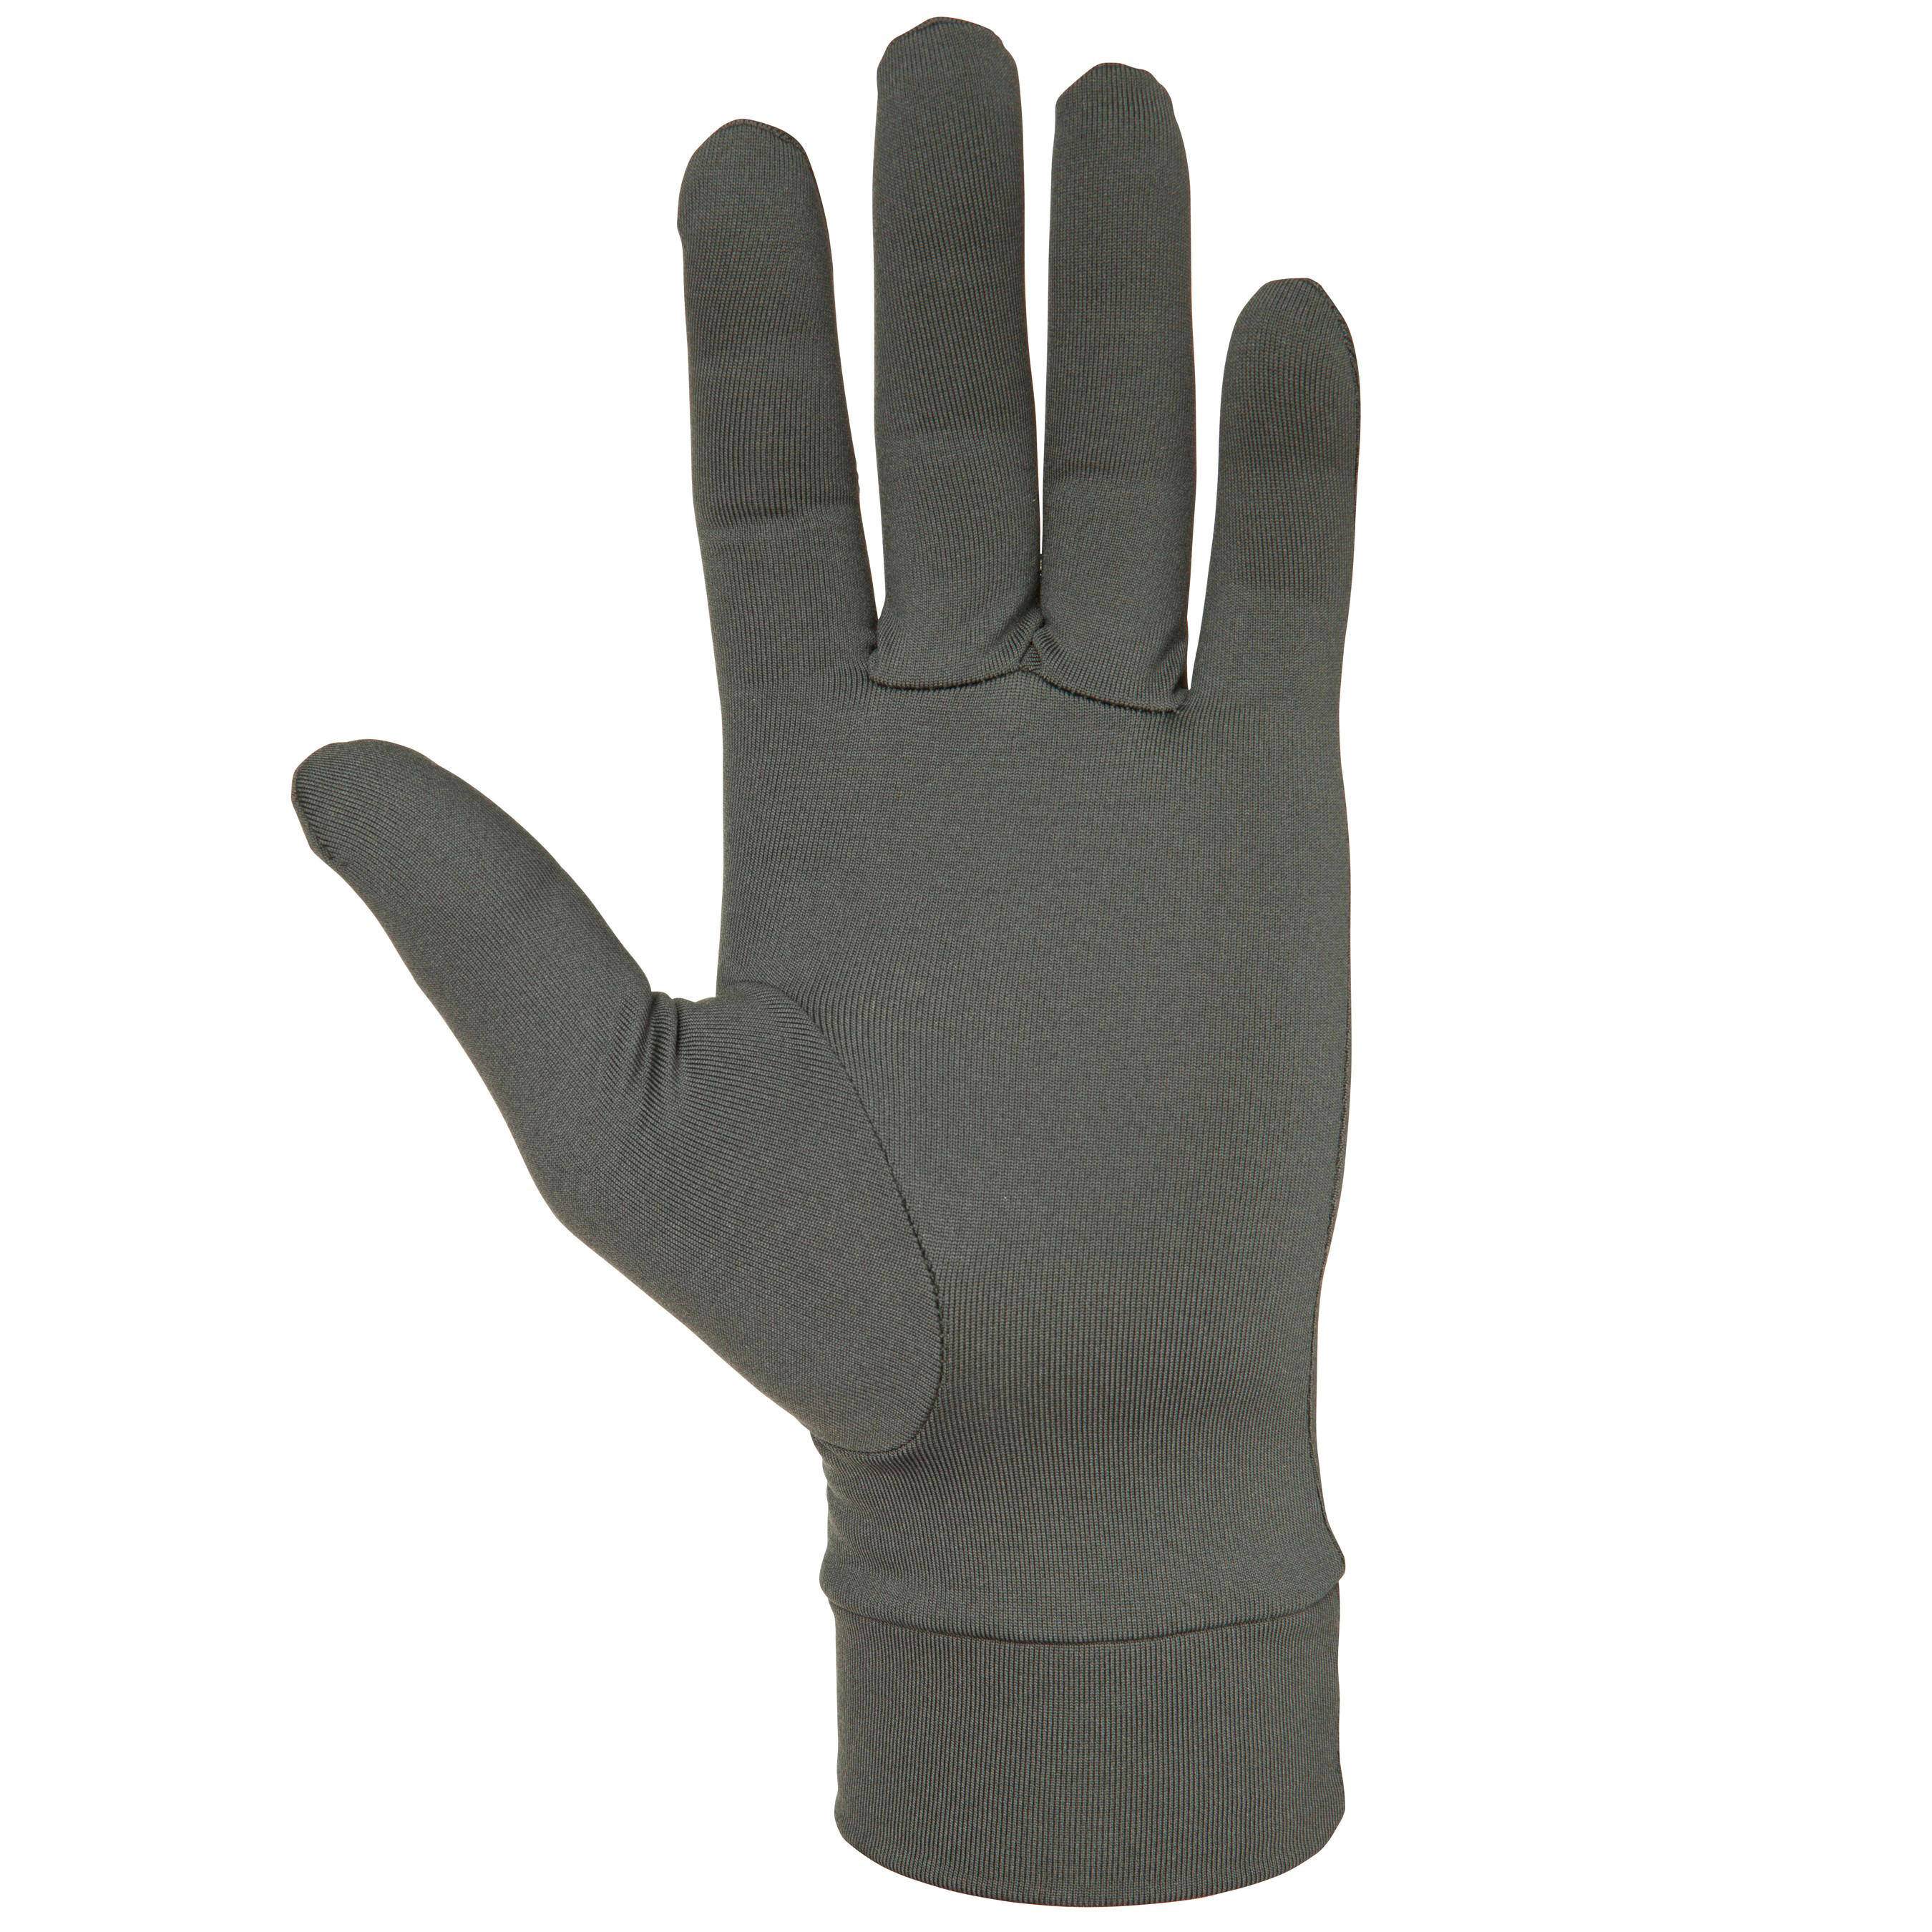 Liner Gloves - Olive Black 2/5